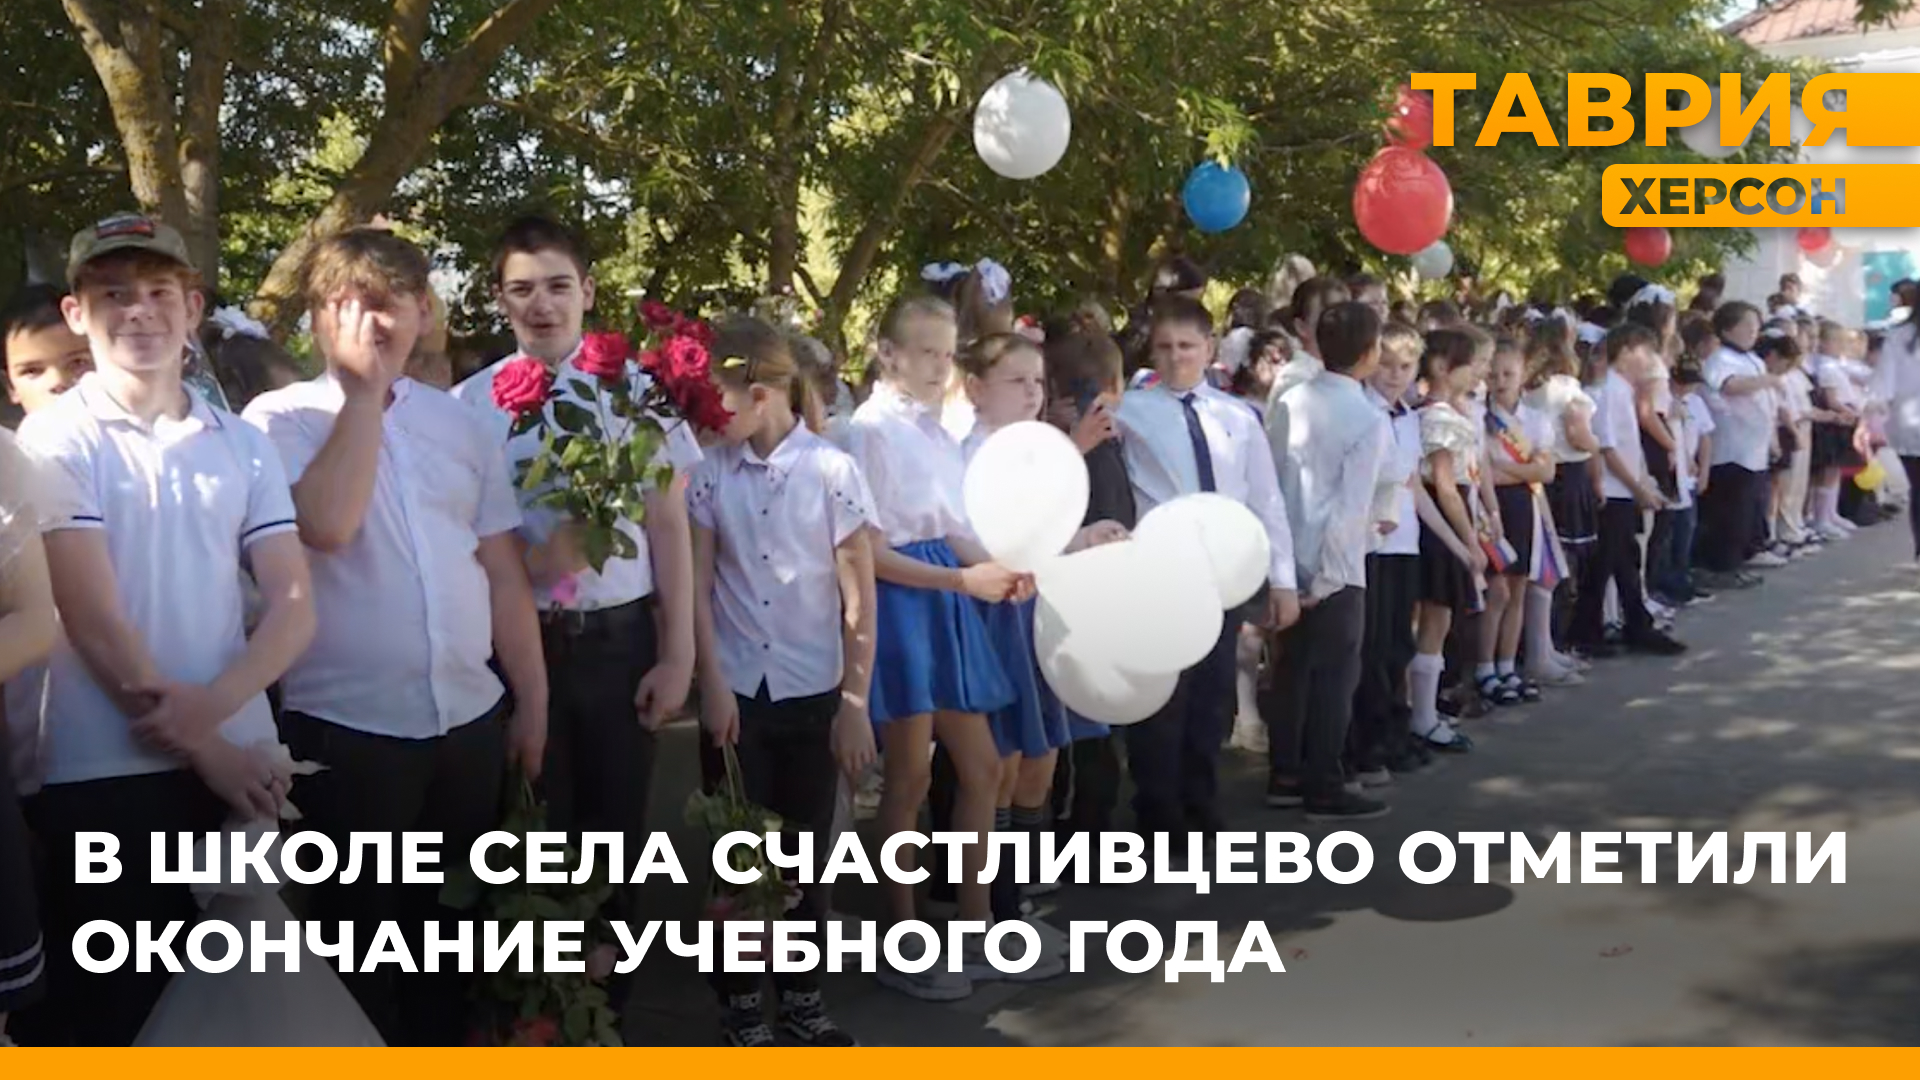 В школе села Счастливцево состоялась торжественная линейка, посвященная окончанию учебного года